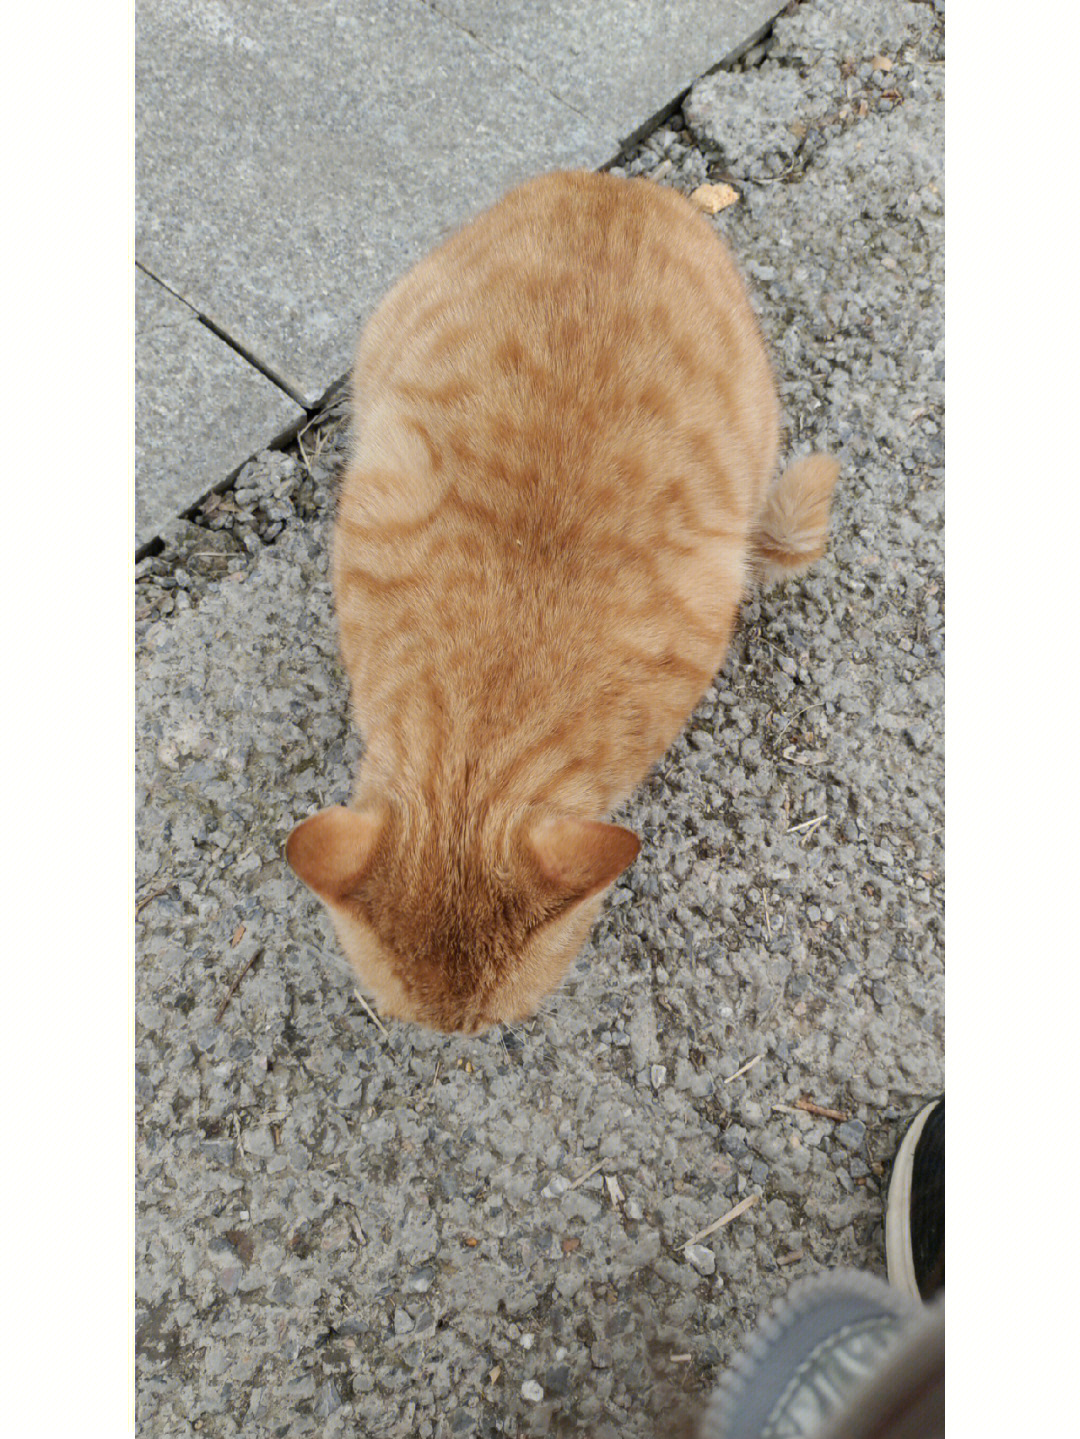 为什么橘猫这么胖,但它真的很可爱